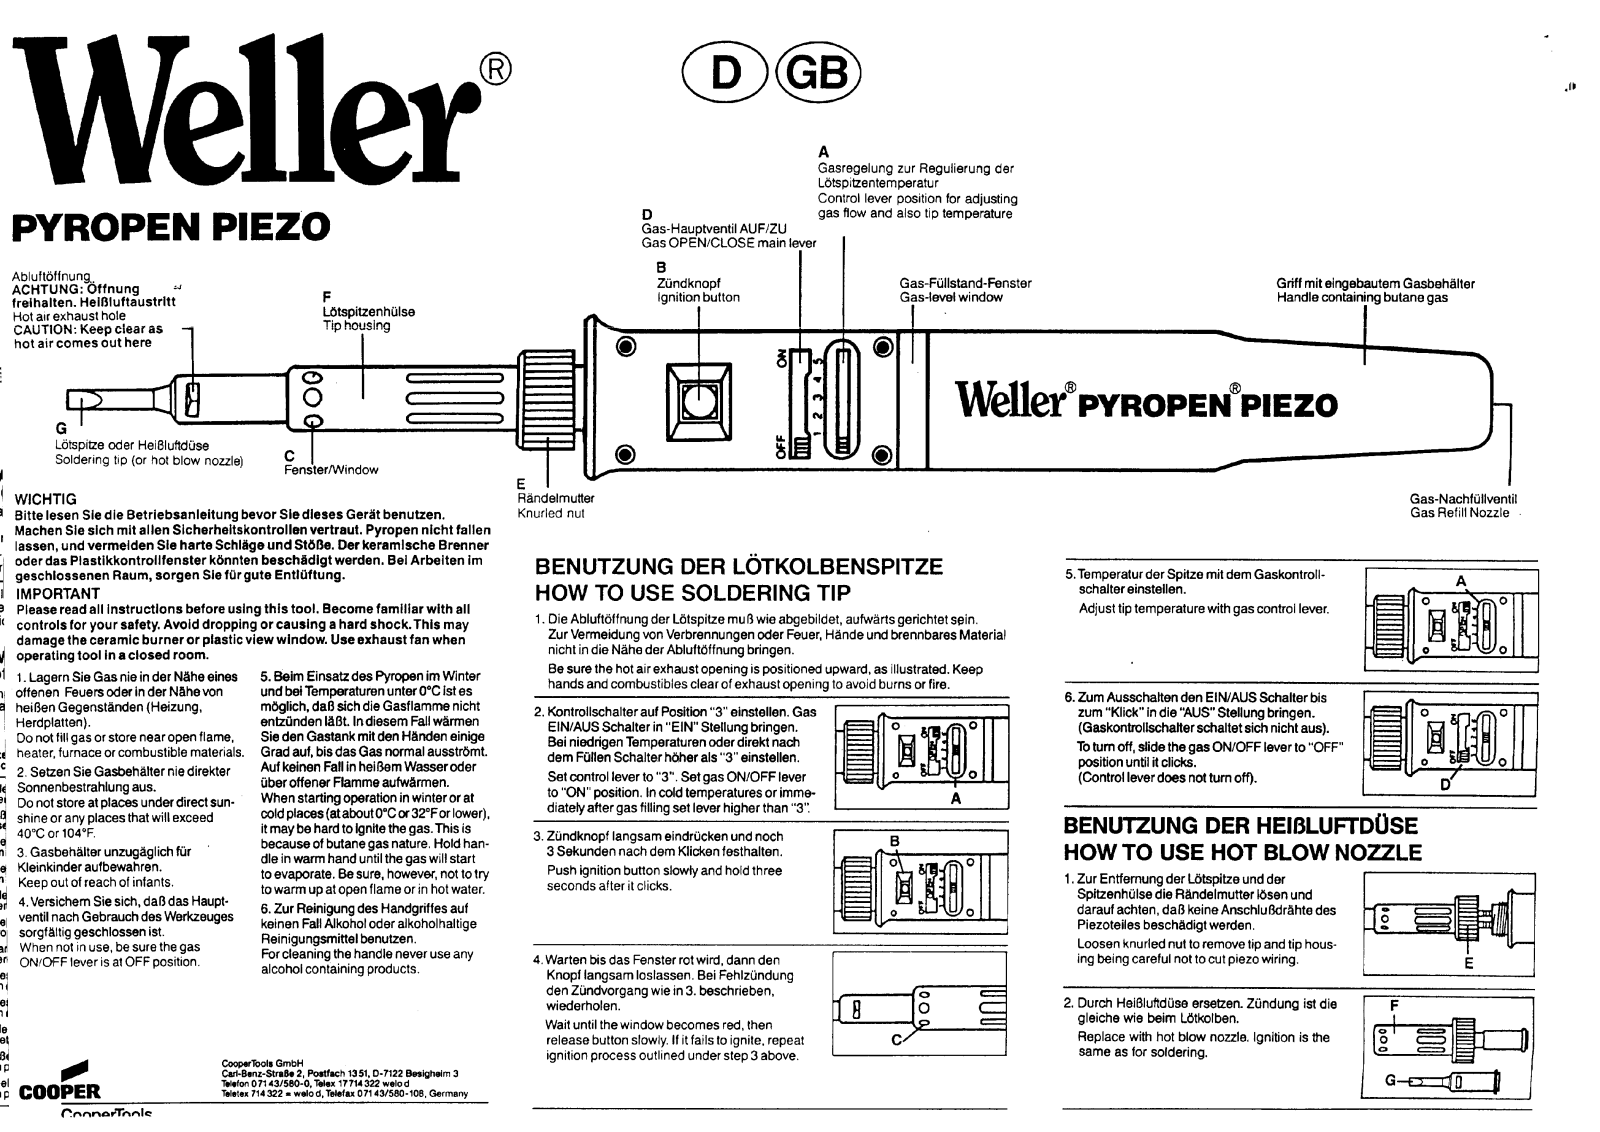 Weller Pyropen Piezo operation manual